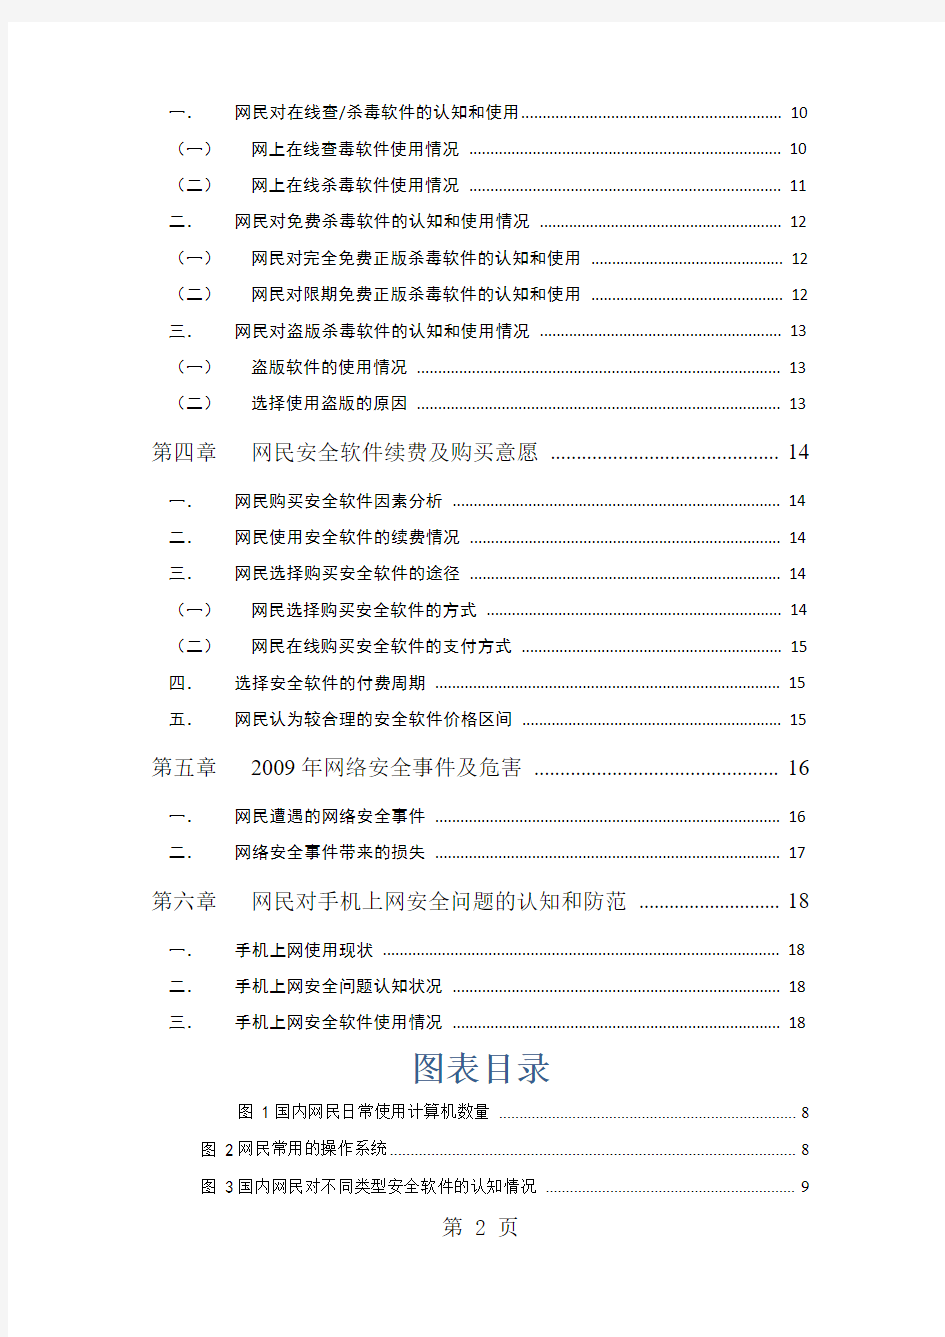 2019年中国网民网络信息安全软件使用行为调查报告-19页精选文档